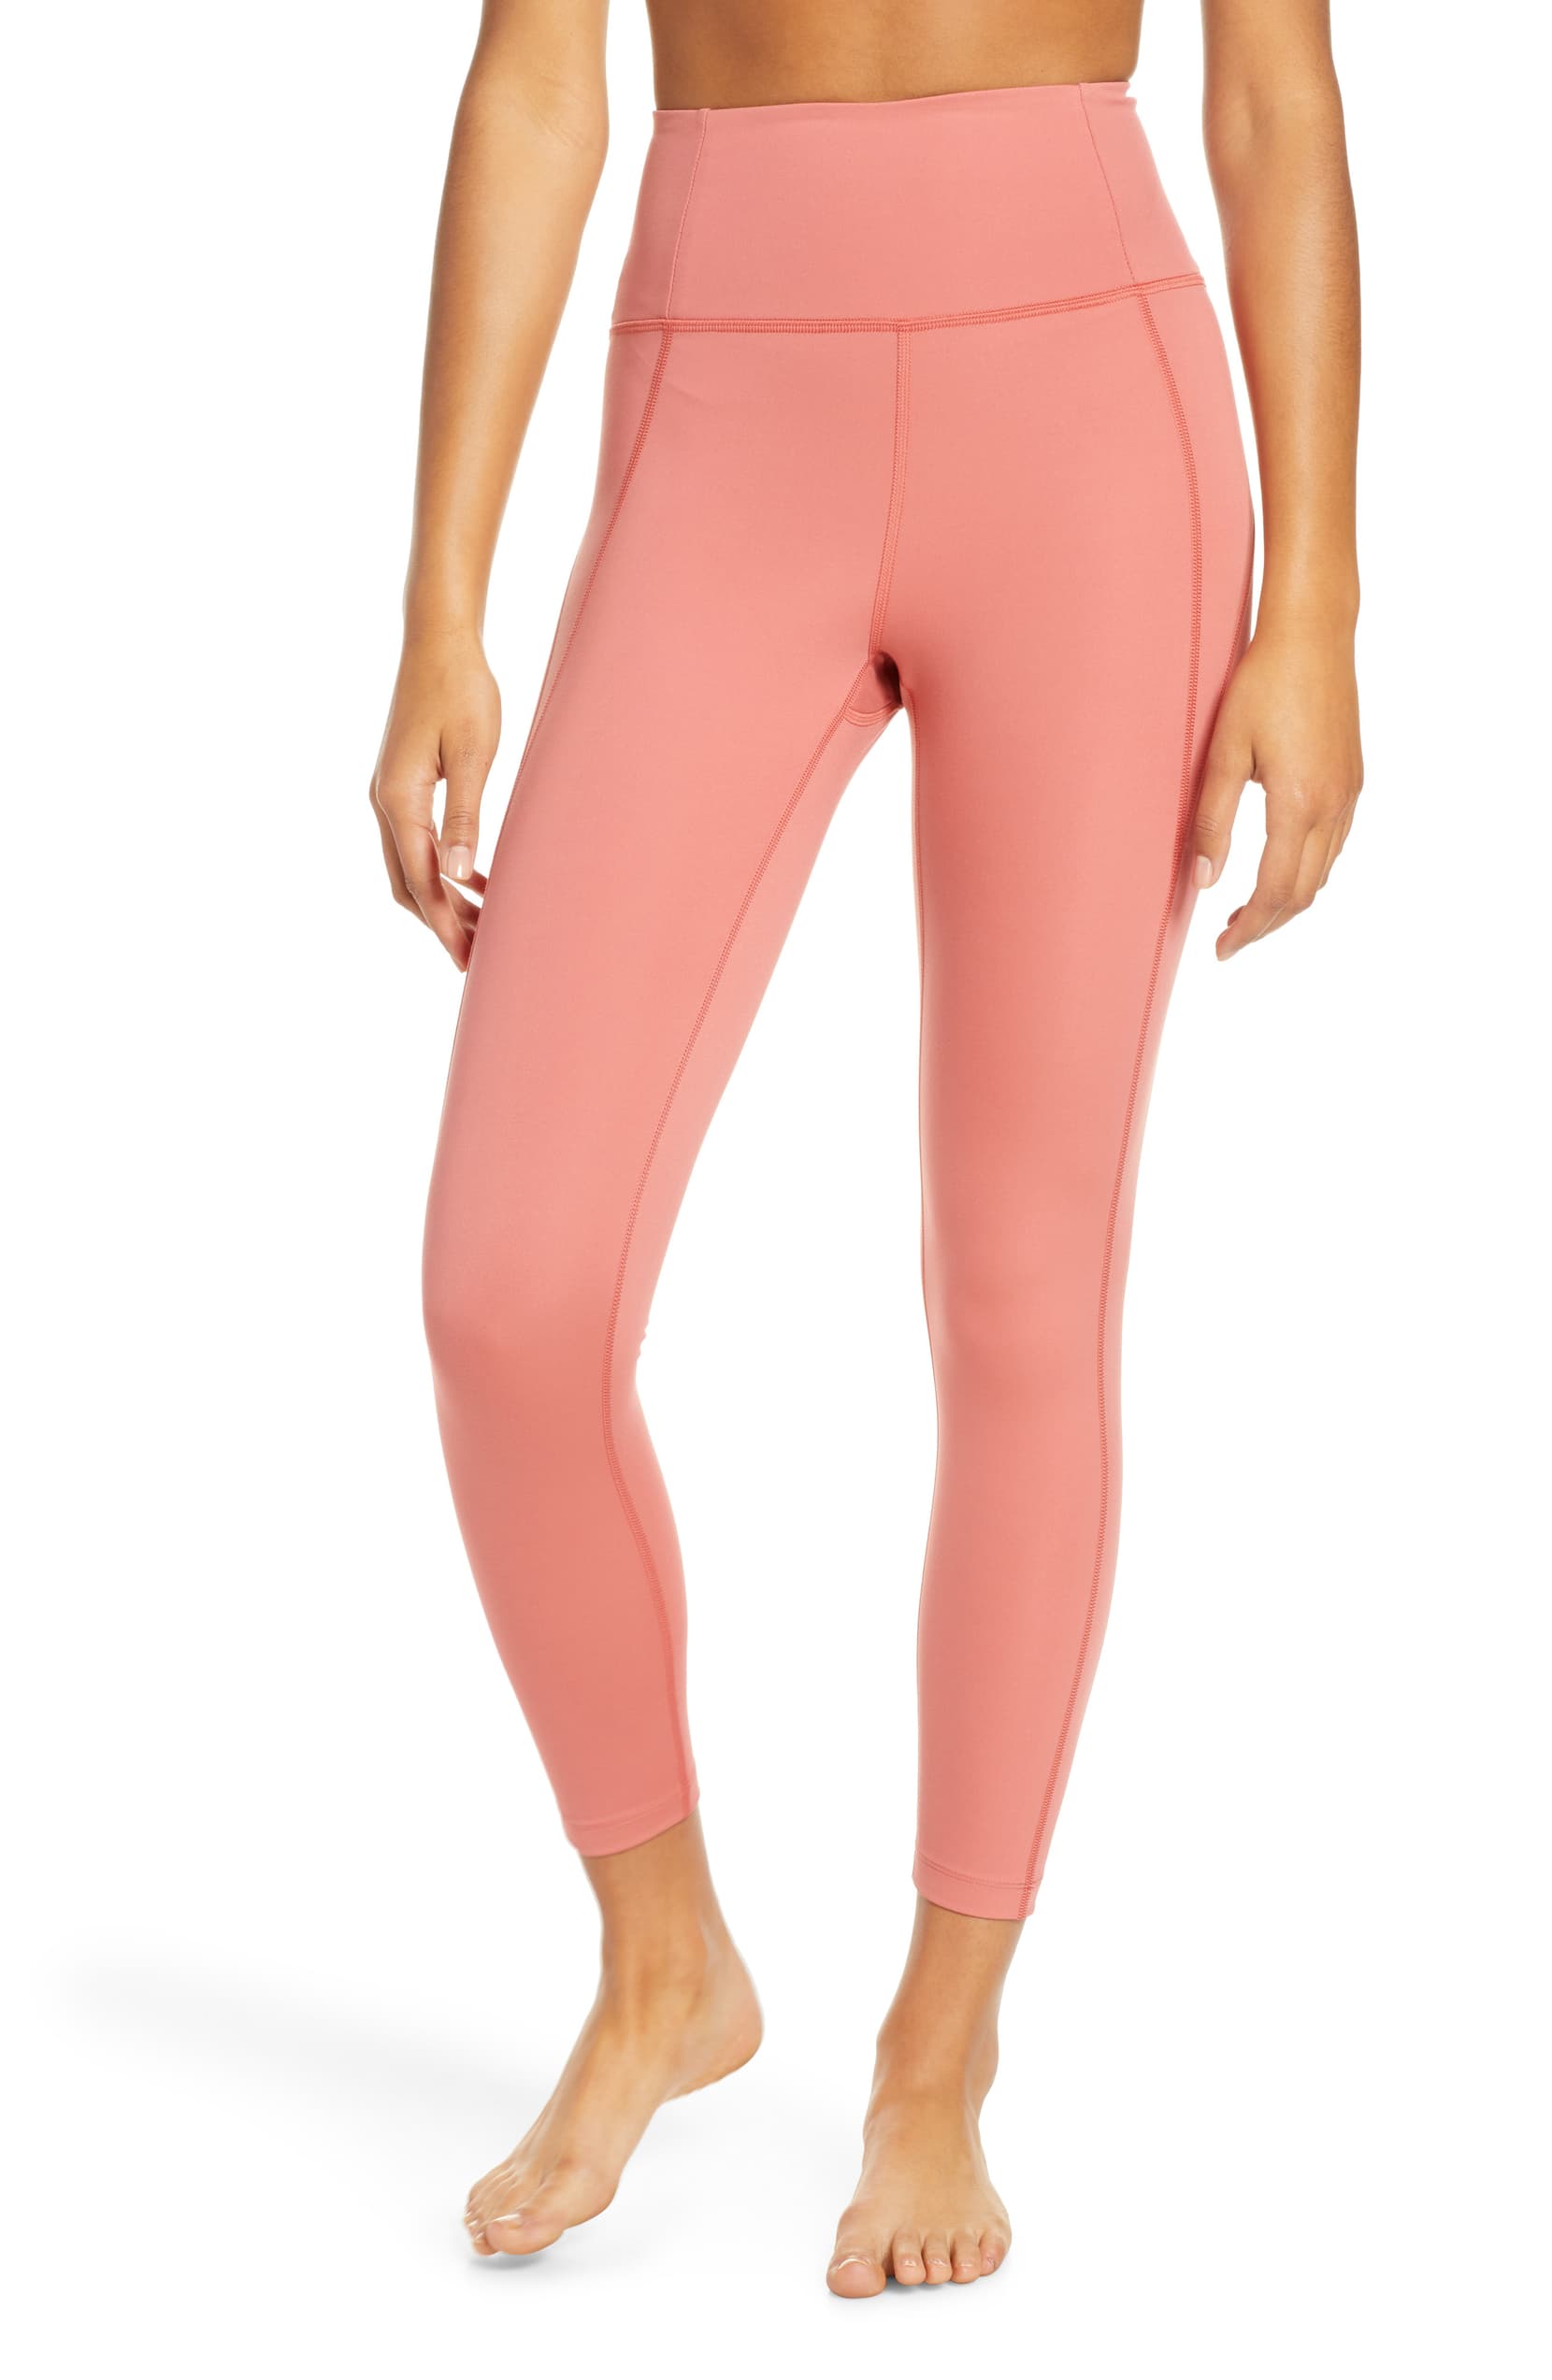 pink workout leggings